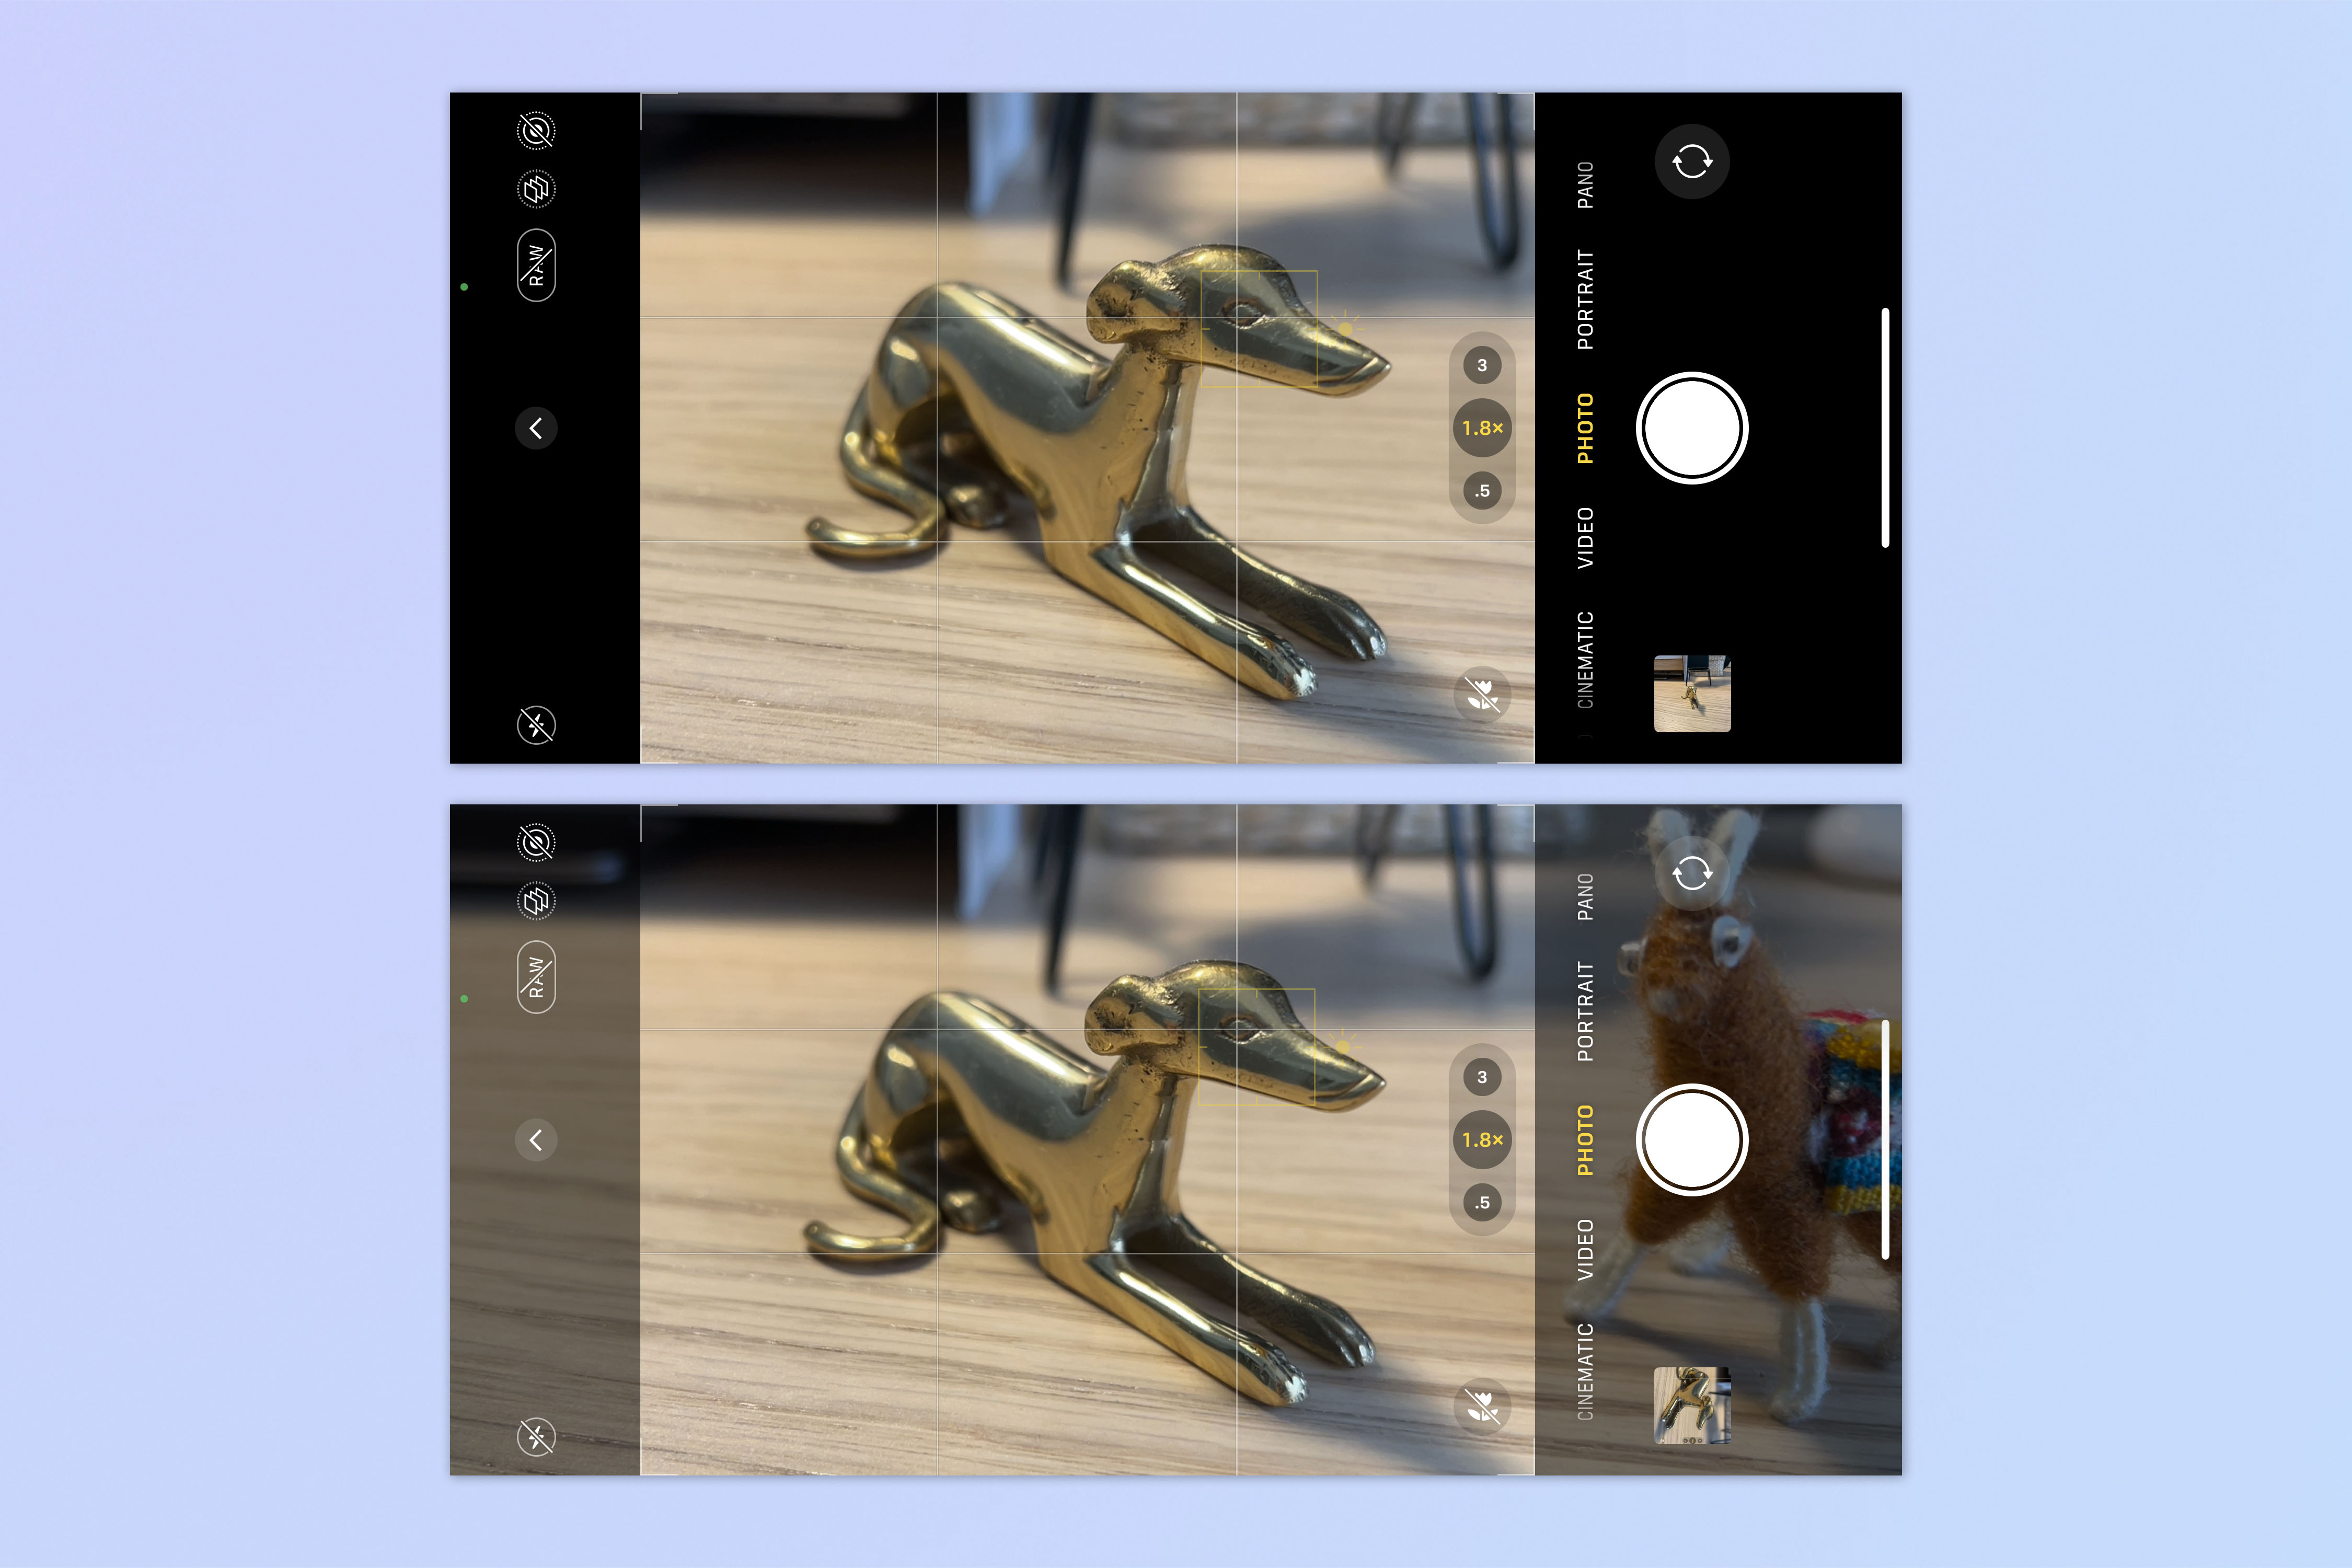 Два скриншота камеры iPhone в горизонтальной ориентации.  На верхнем изображении показана латунная модель собаки в рамке, а на нижнем изображении показана собака, а также игрушечная альпака на окраинах изображения после включения «Просмотра за пределами кадра».